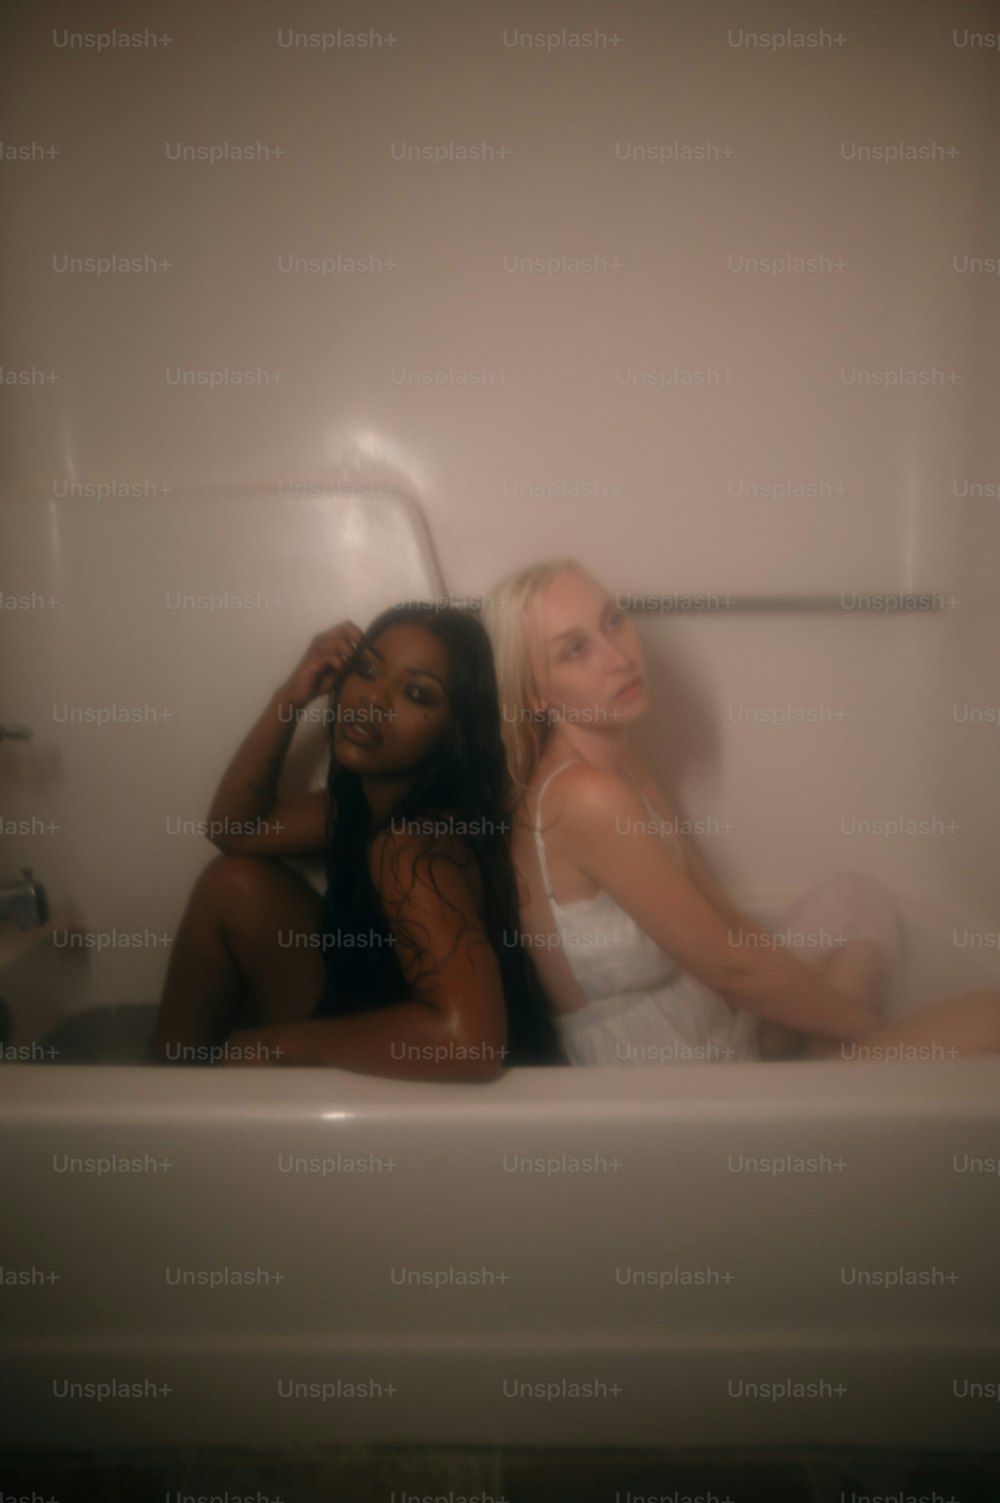 Zwei Frauen sitzen in einer Badewanne in einem Badezimmer